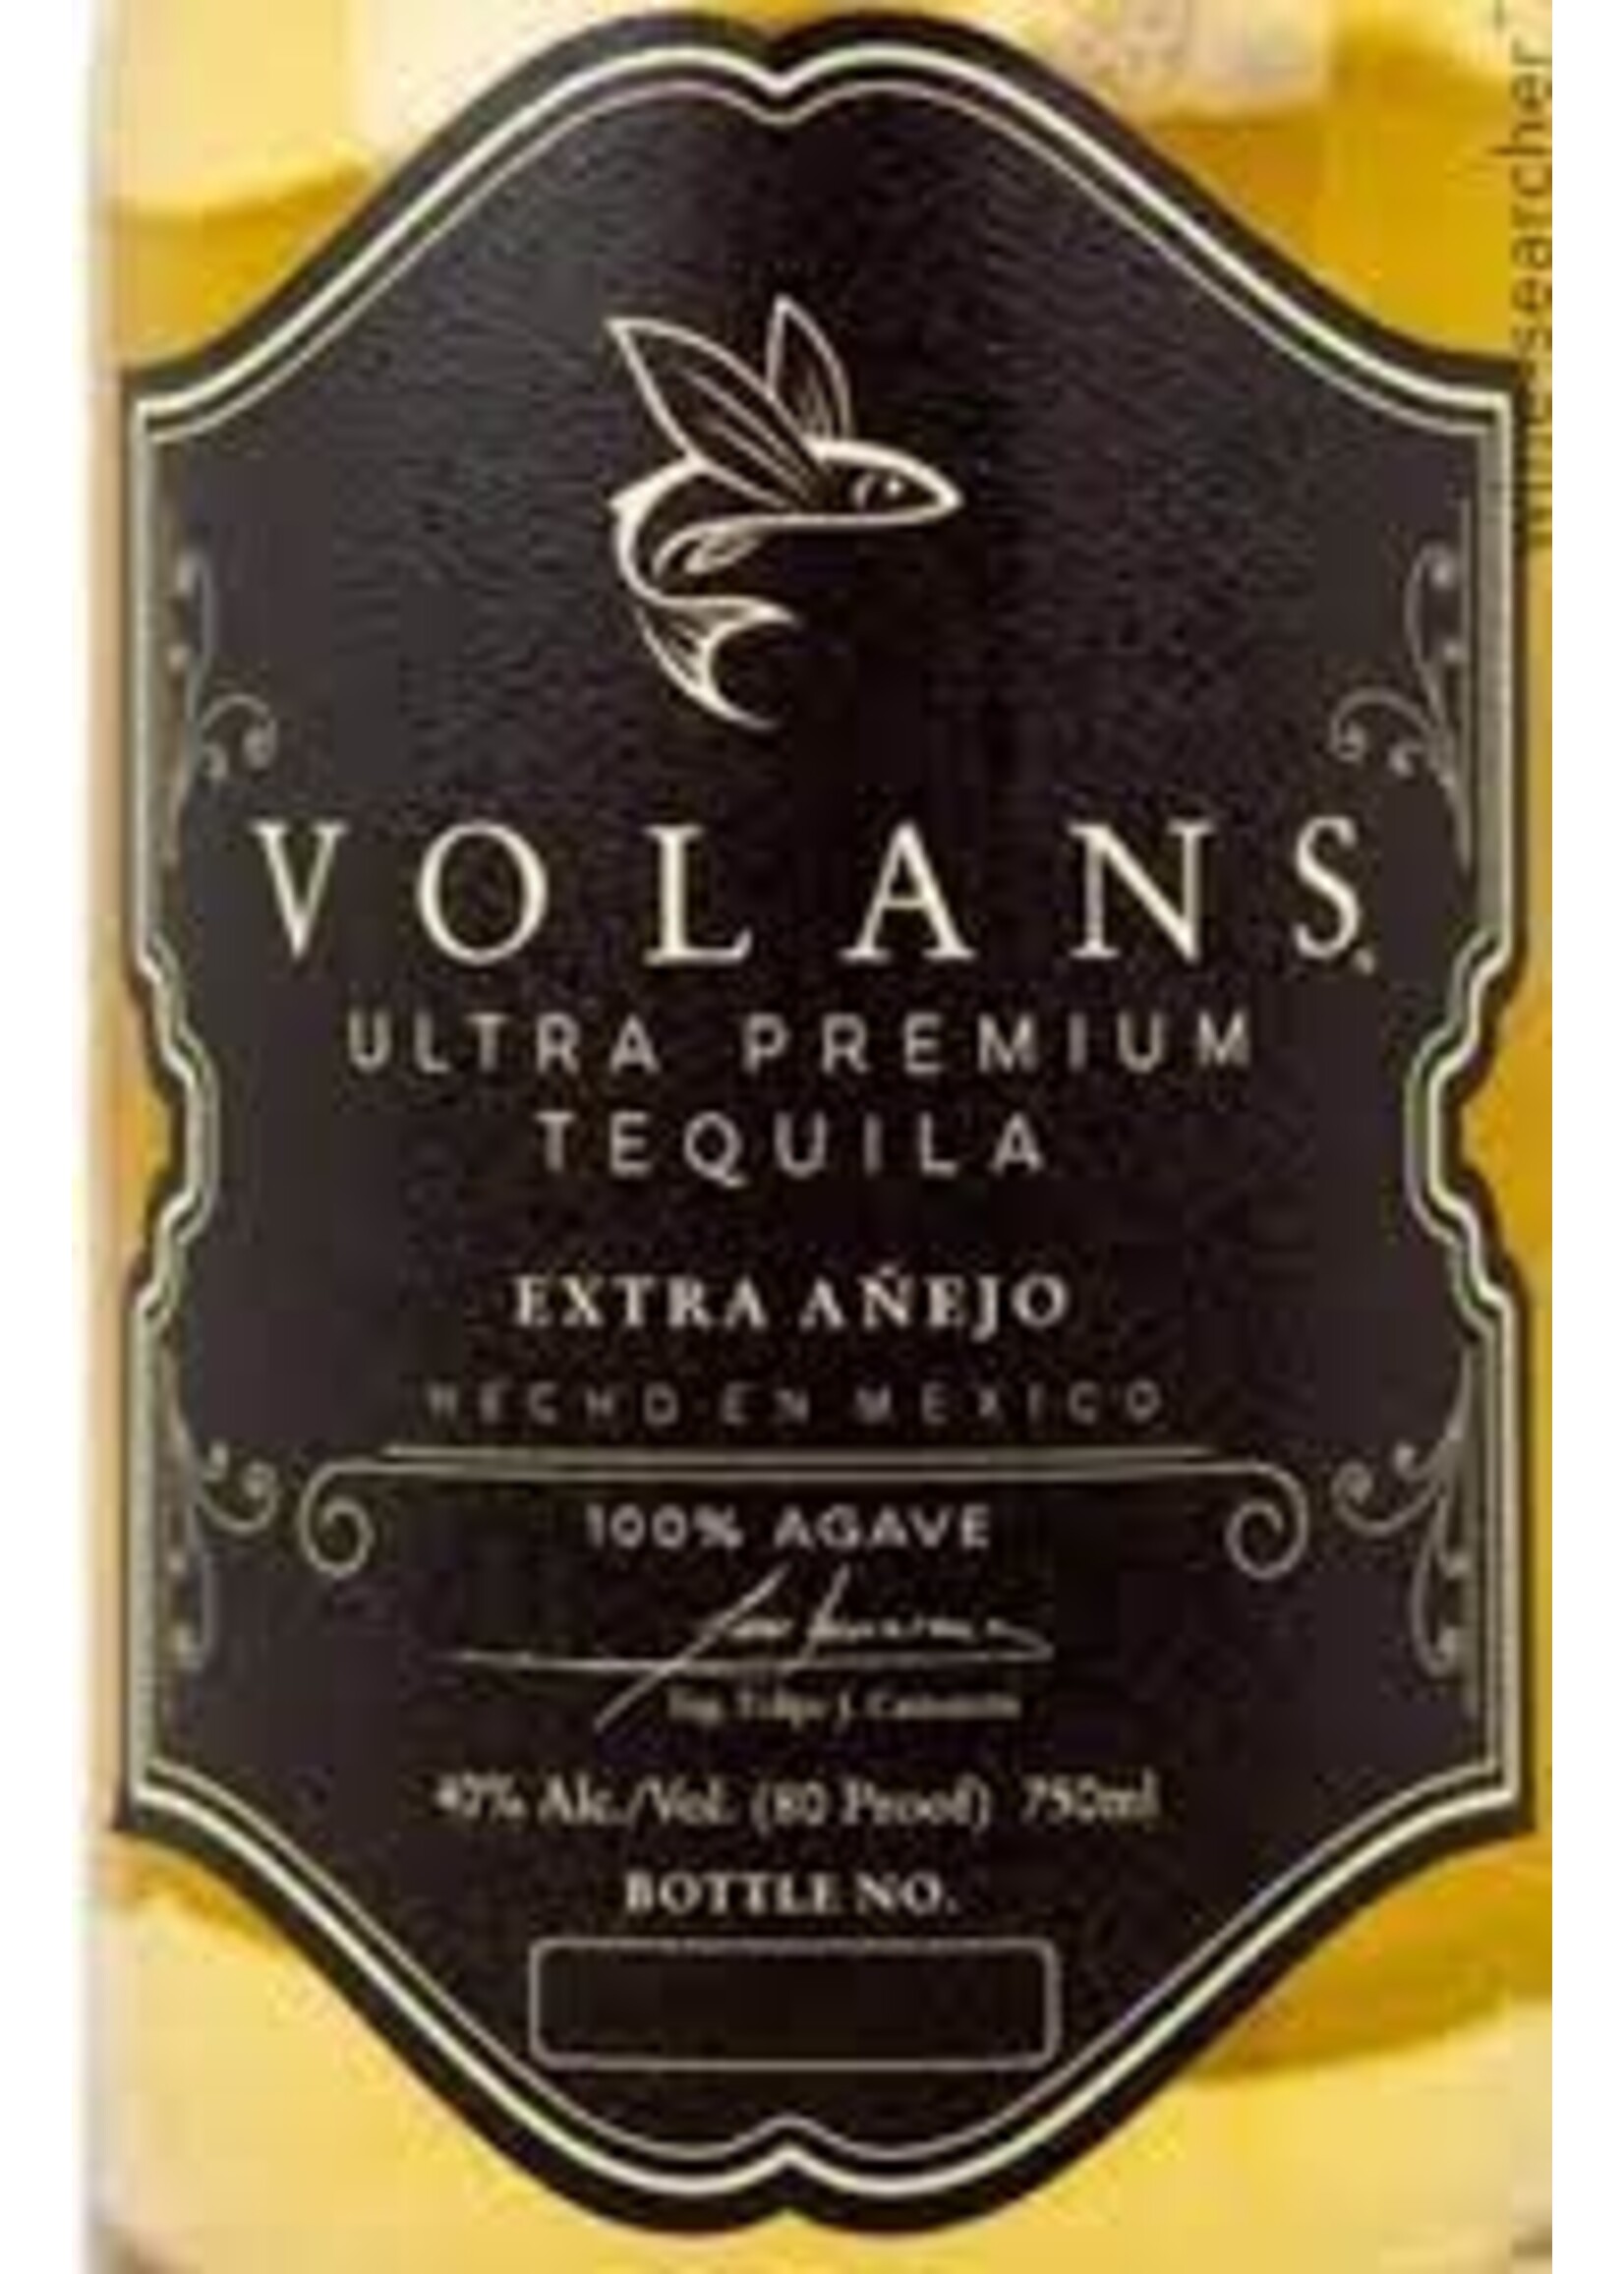 Volans Tequila Extra Anejo 3yr 750ml